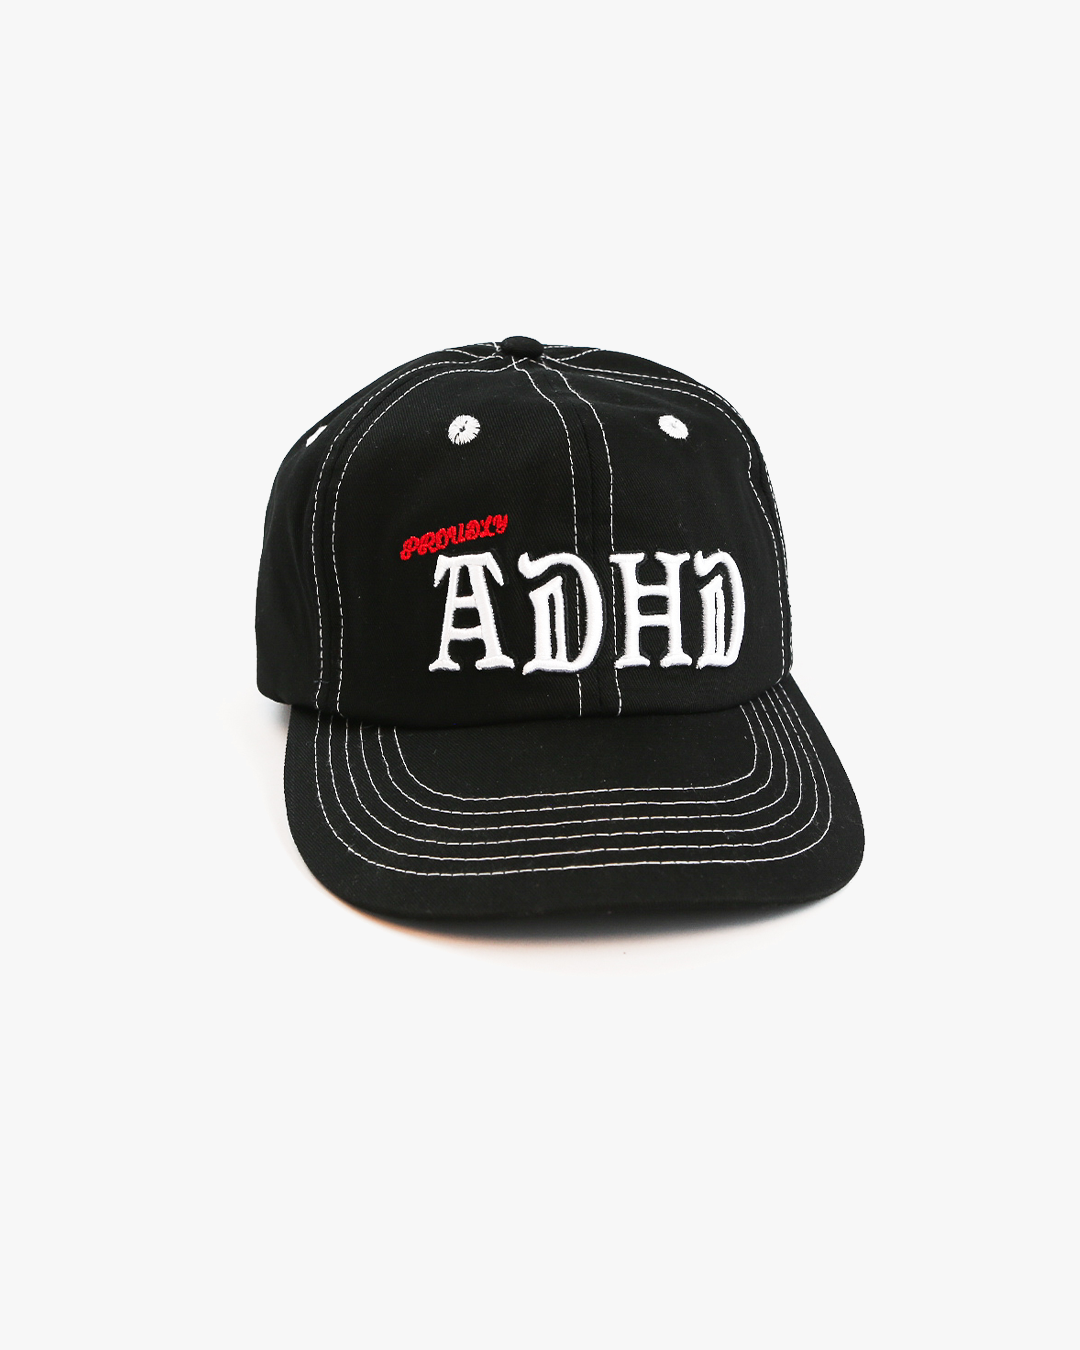 Proudly ADHD CAP